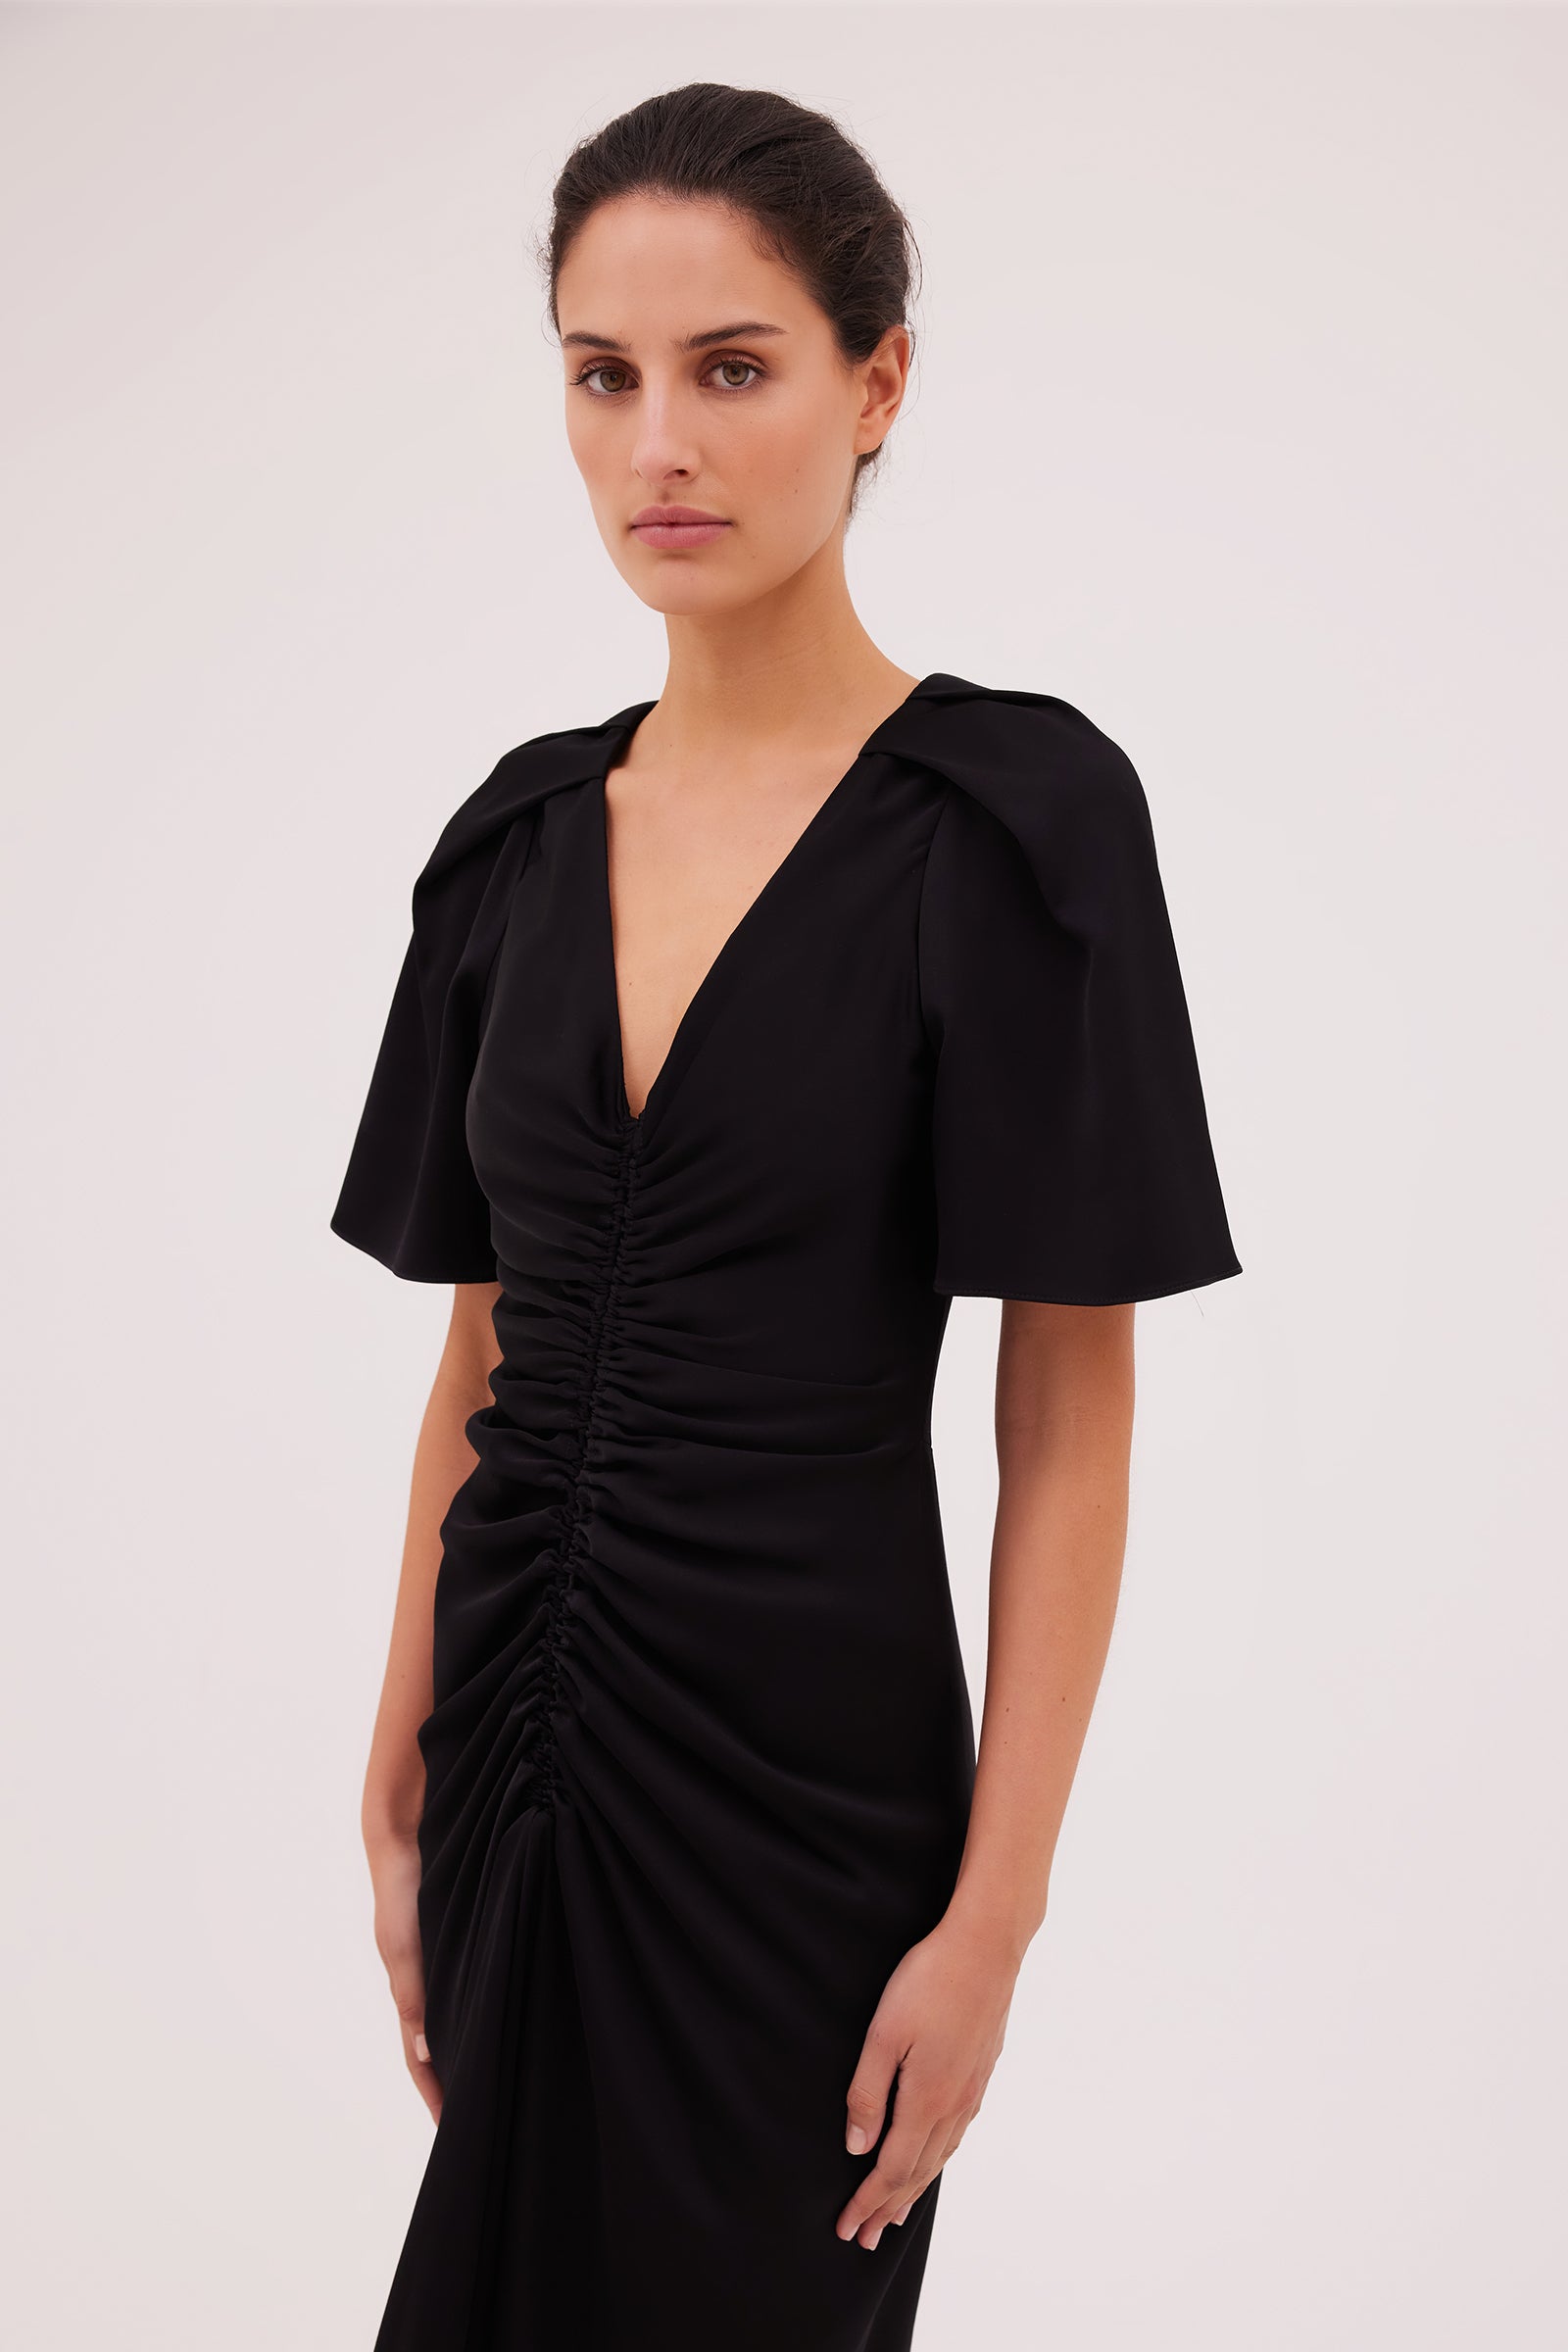 BLACK SATIN BELLINI DRESS – Bianca Spender